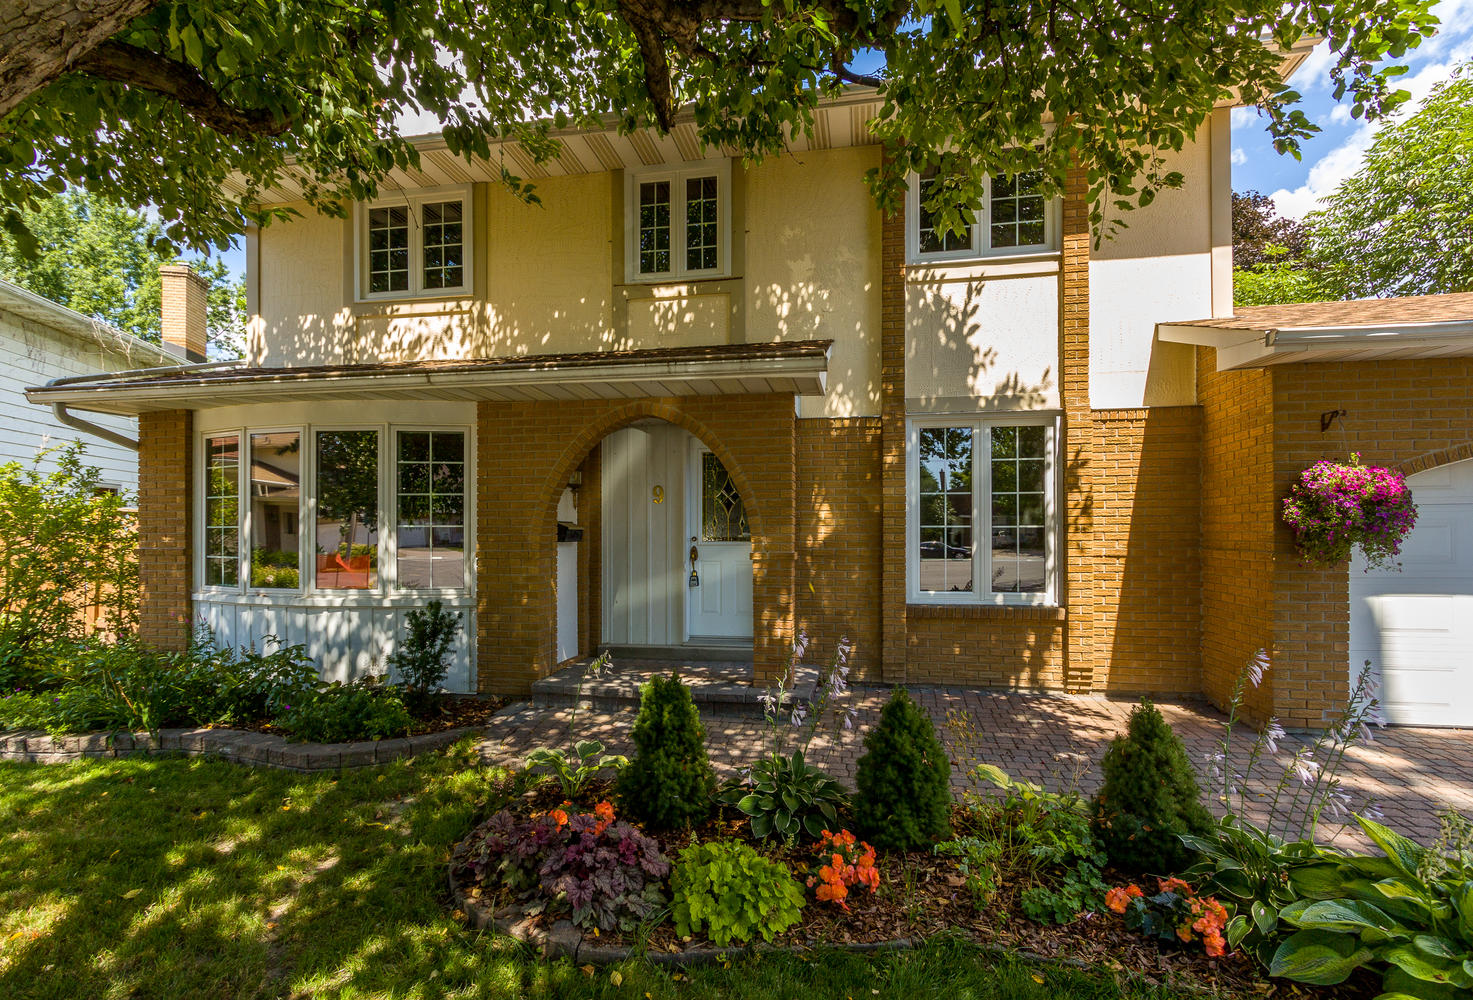 Ottawa Homes - SOLD!! - Ottawa Homes for Sale | BGM Real Estate